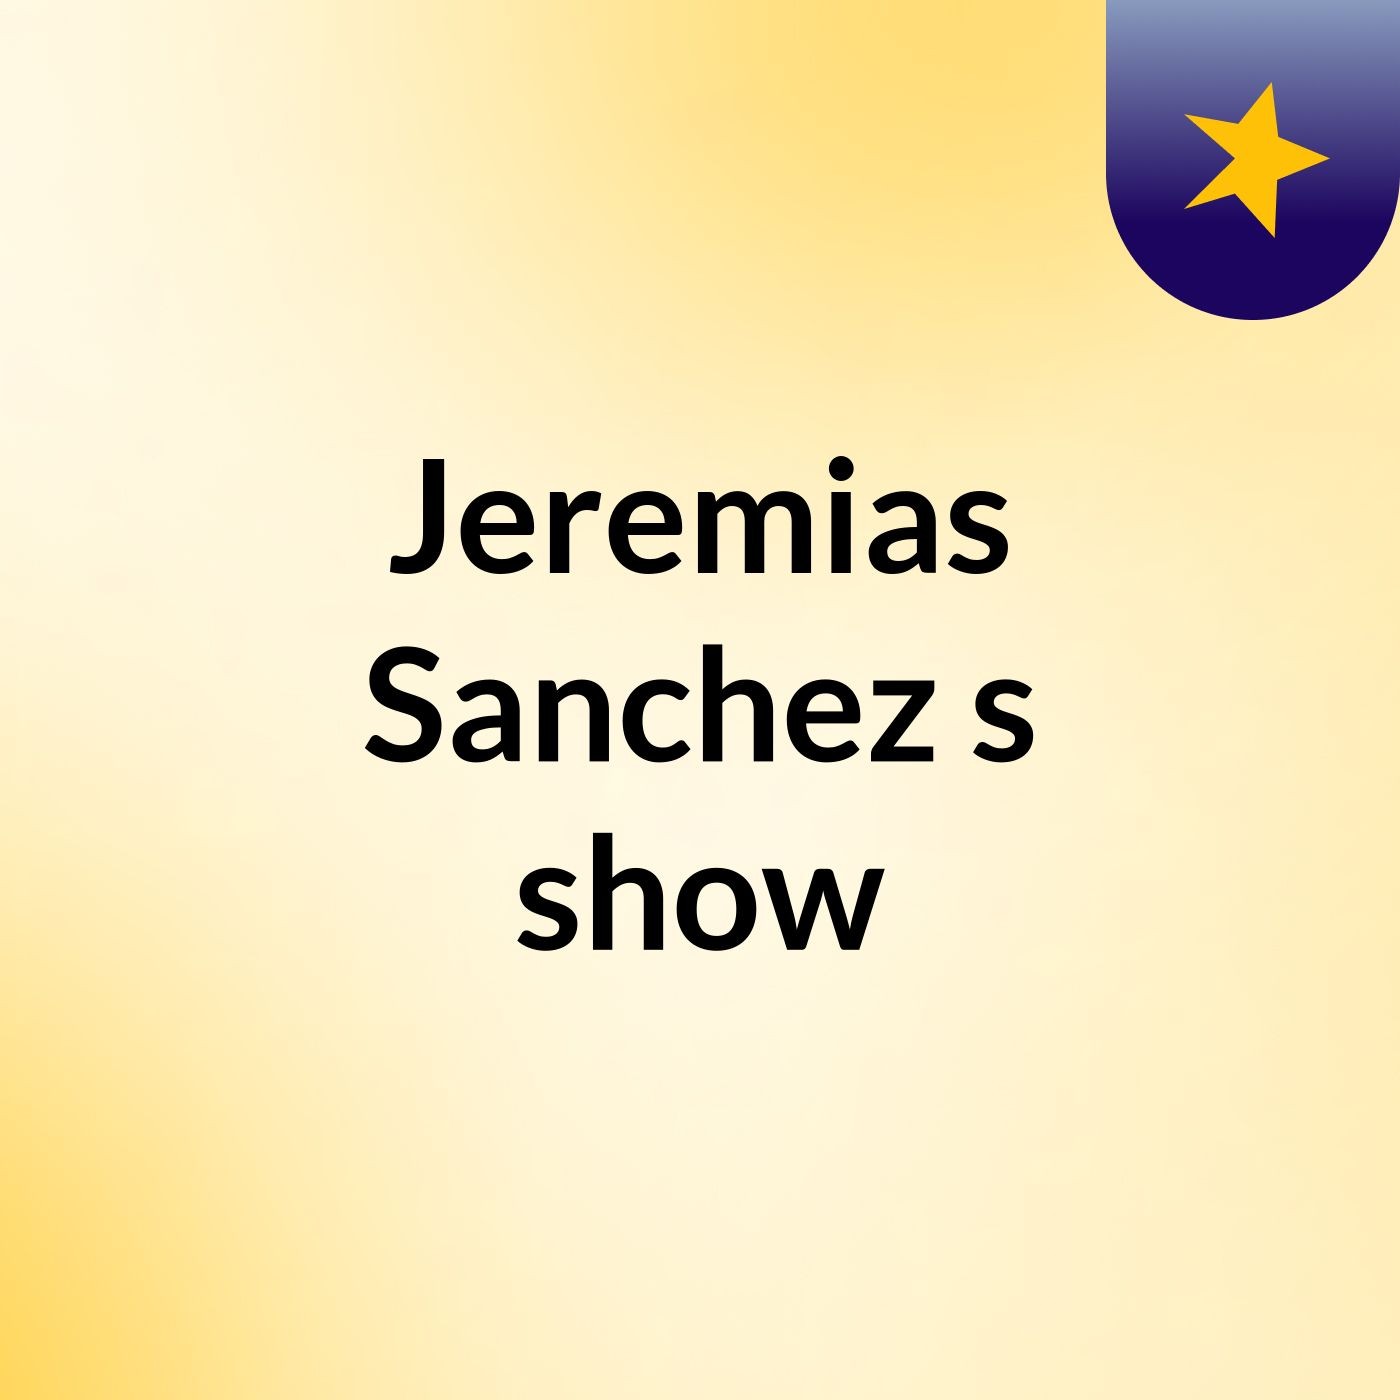 Jeremias Sanchez's show